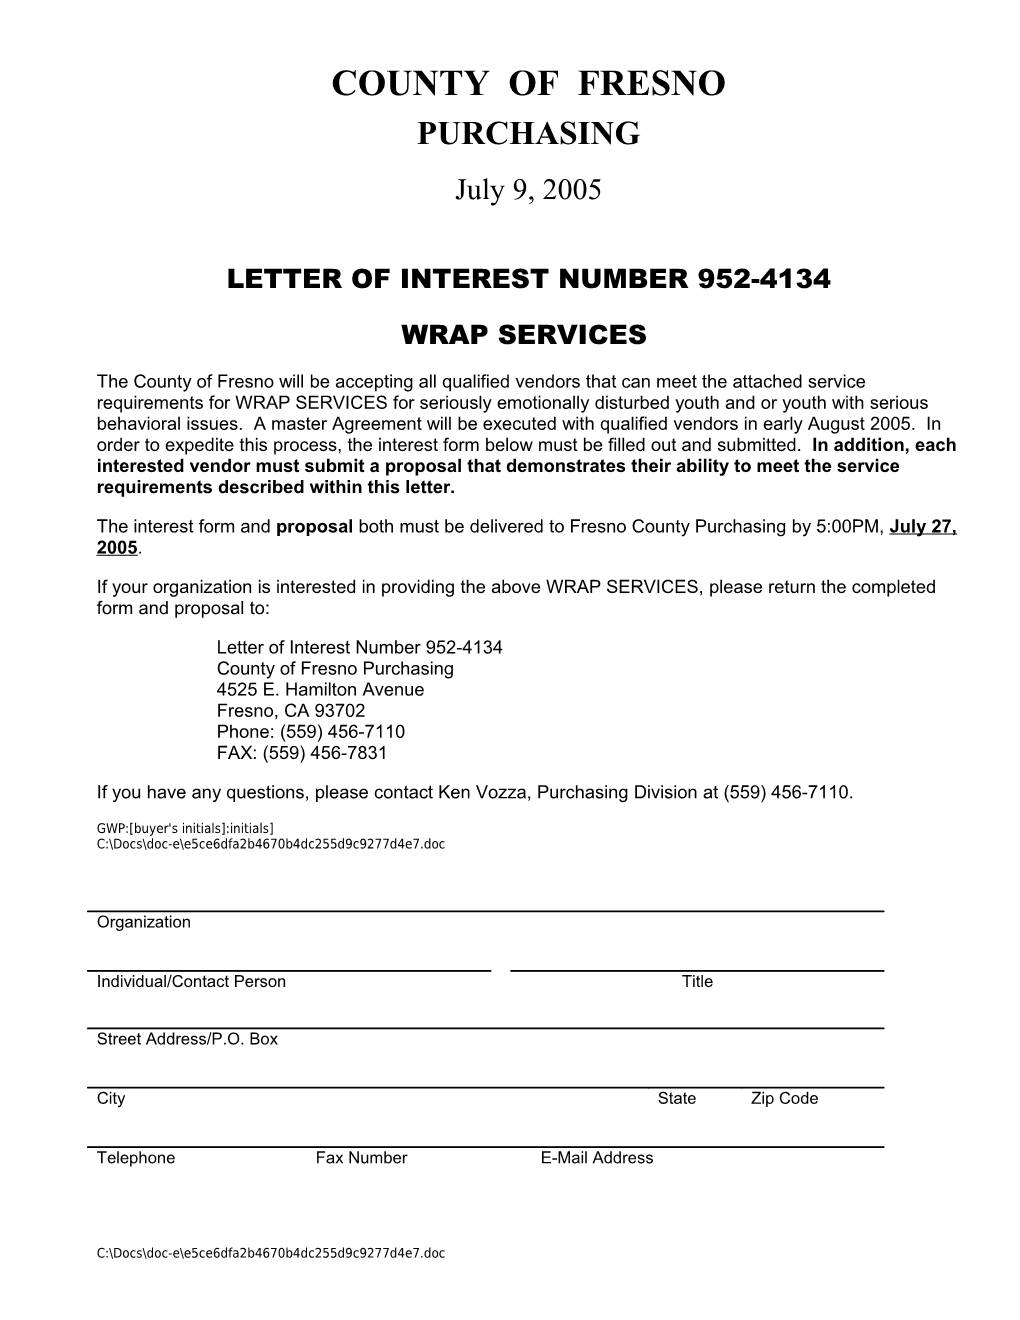 Letter of Interest Number (Bid No